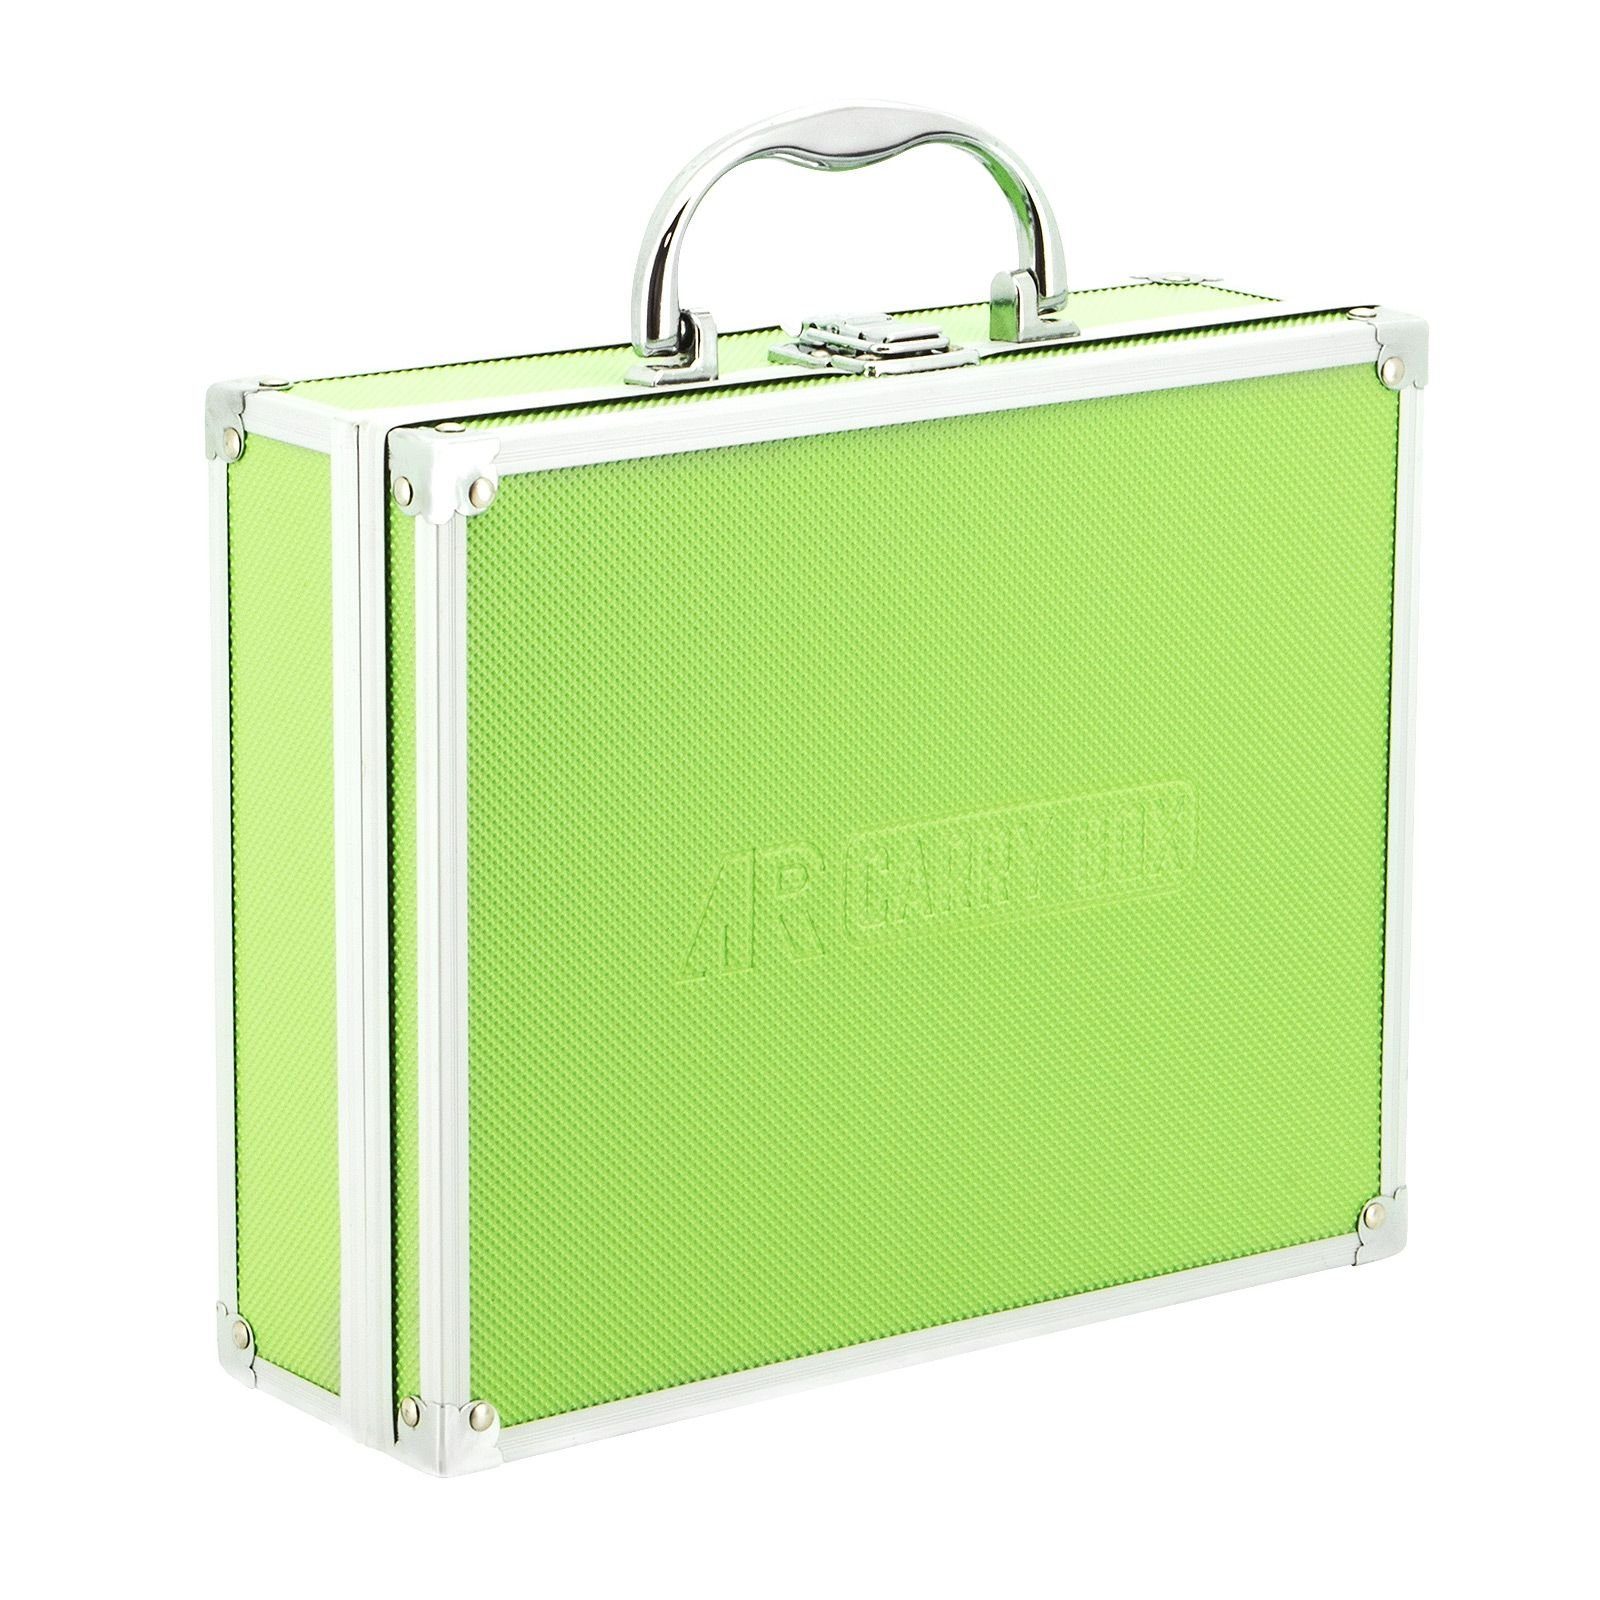 Box Grün mit verschiedene Werkzeugkoffer Tools Aluminium ECI (LxBxH Koffer Farben Schaumstoffeinlage